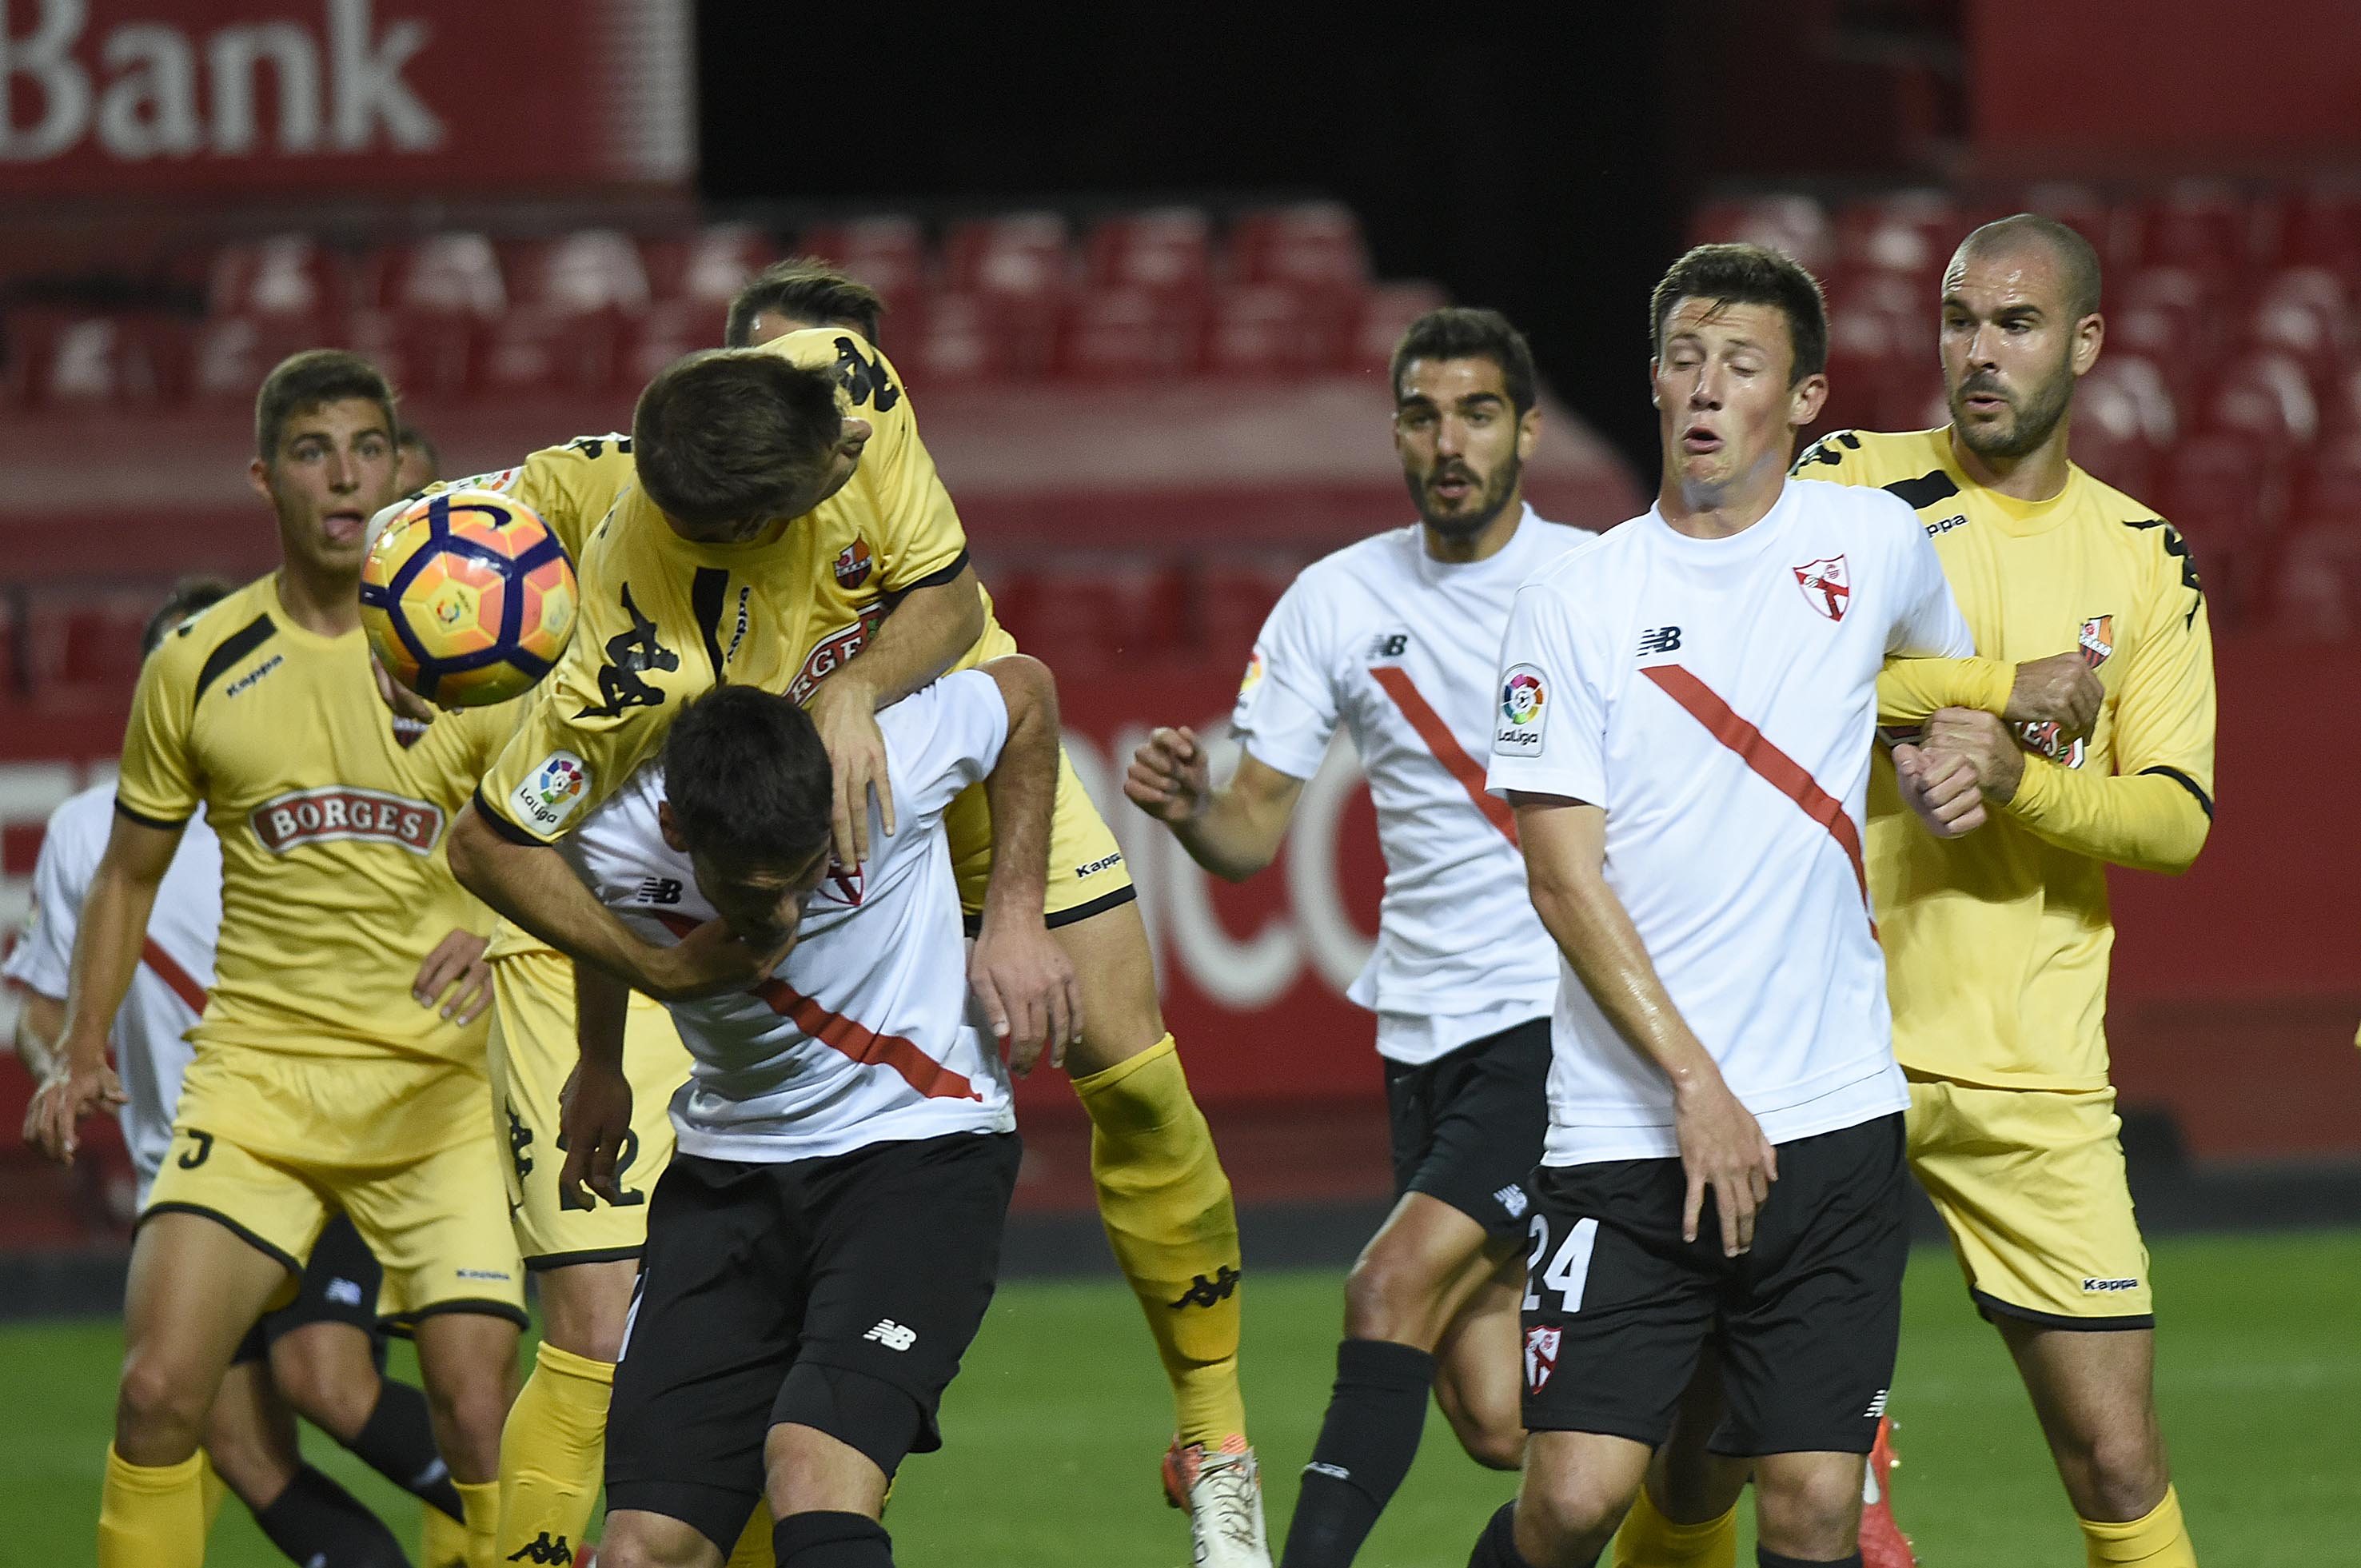 Una acción del partido entre el Sevilla Atlético y el Reus